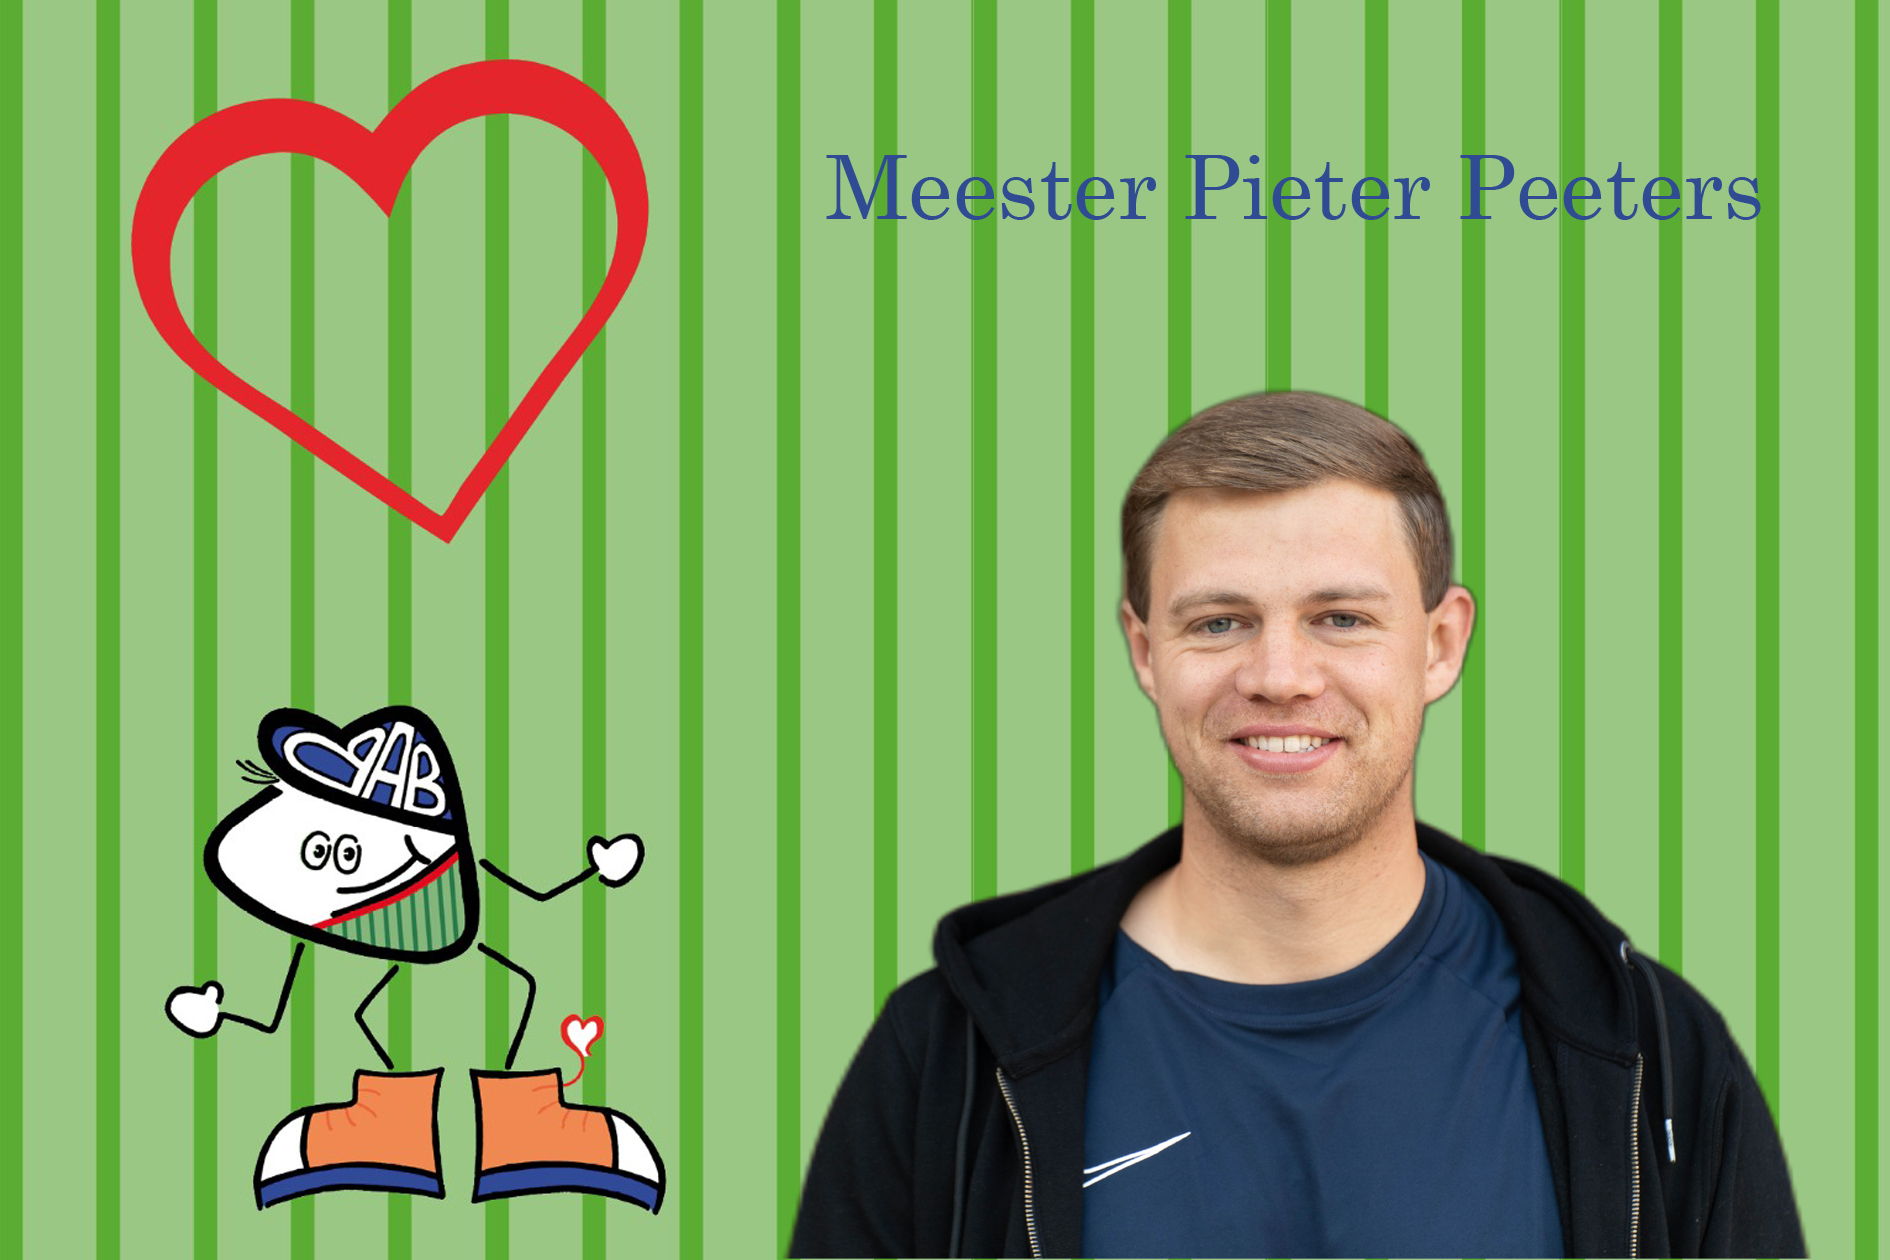 Pieter Peeters